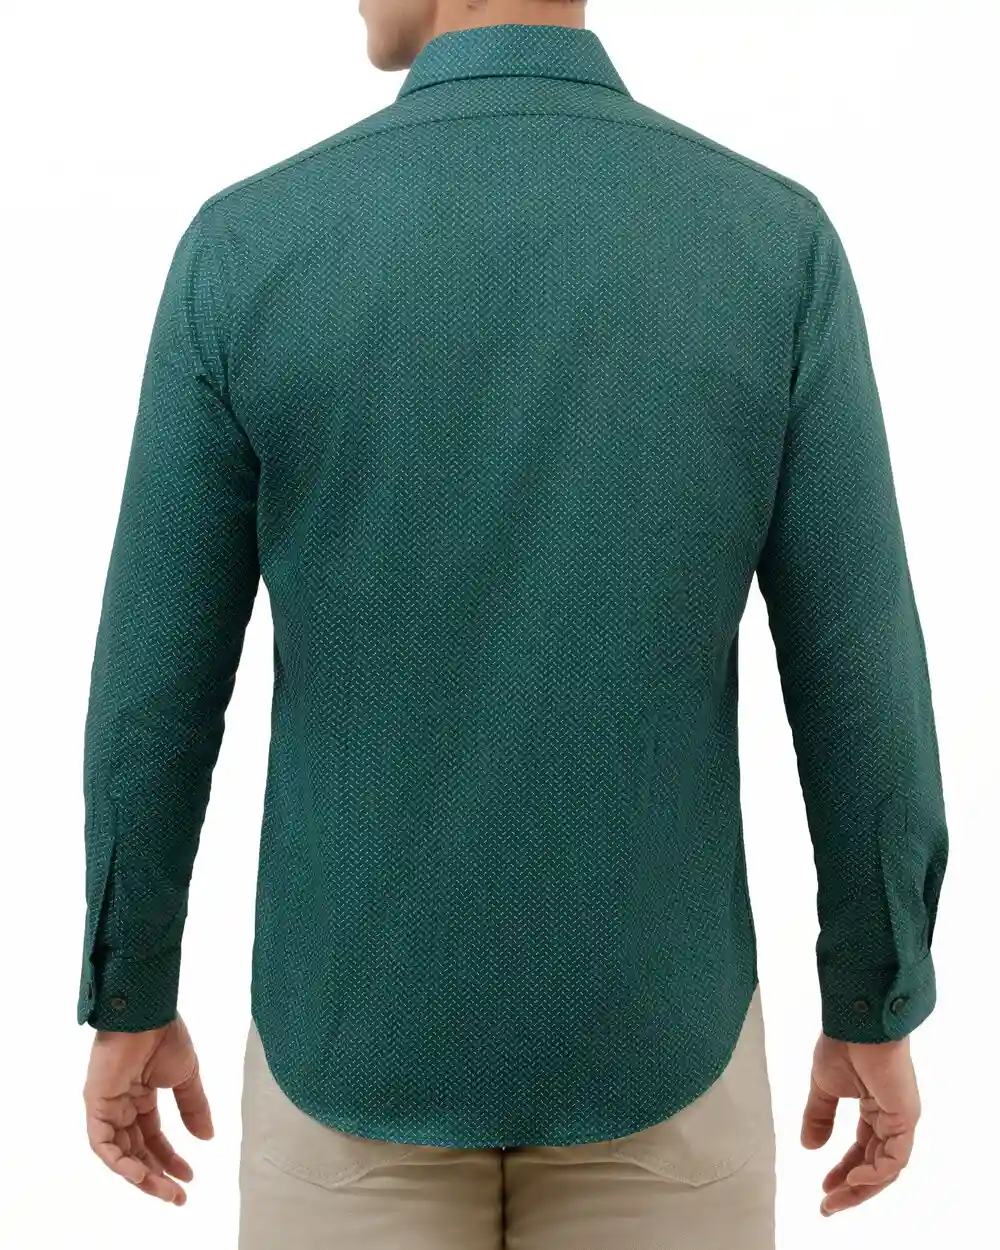 Camisa estampada de vestir slim fit manga larga   pique color verde